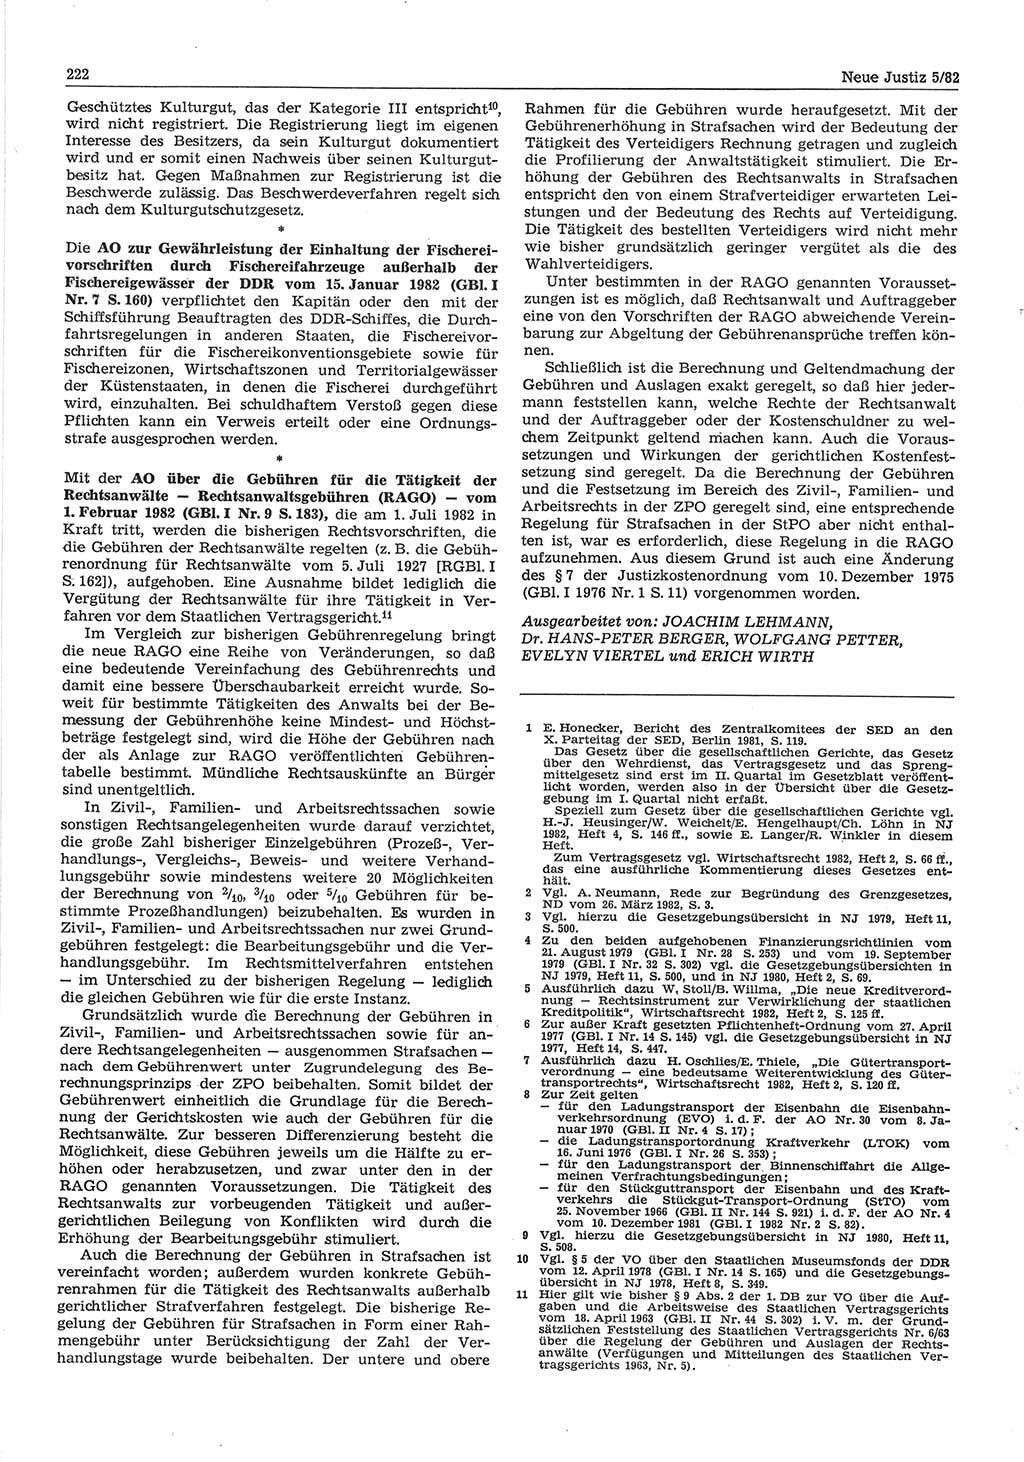 Neue Justiz (NJ), Zeitschrift für sozialistisches Recht und Gesetzlichkeit [Deutsche Demokratische Republik (DDR)], 36. Jahrgang 1982, Seite 222 (NJ DDR 1982, S. 222)